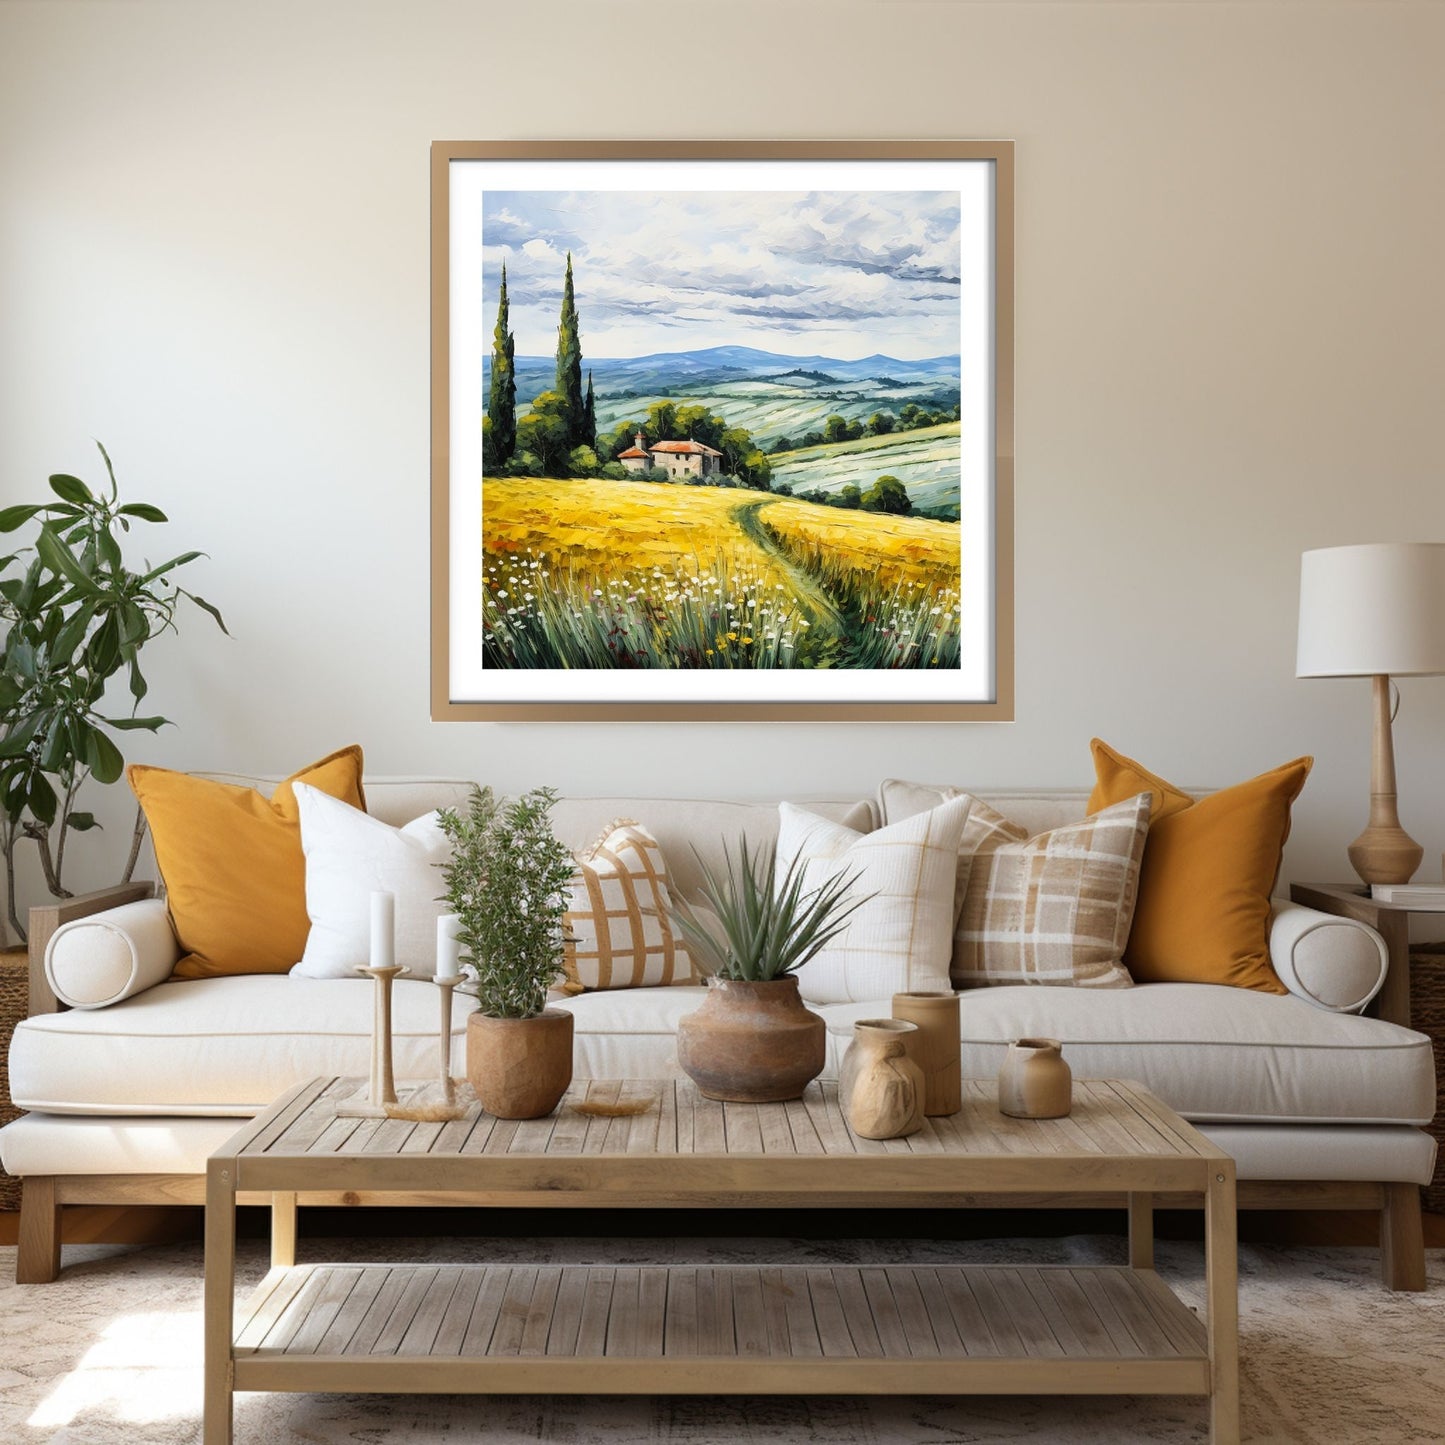 Nydelig grafisk maleri av Toskansk landskap med sine karakteristiske cypresser og bølgende åser. På en åskam ligger det en vingård  Motivet fås som plakat og på lerret. Illustrasjonen viser at motivet henger på en vegg over en sofa i en eikeramme.